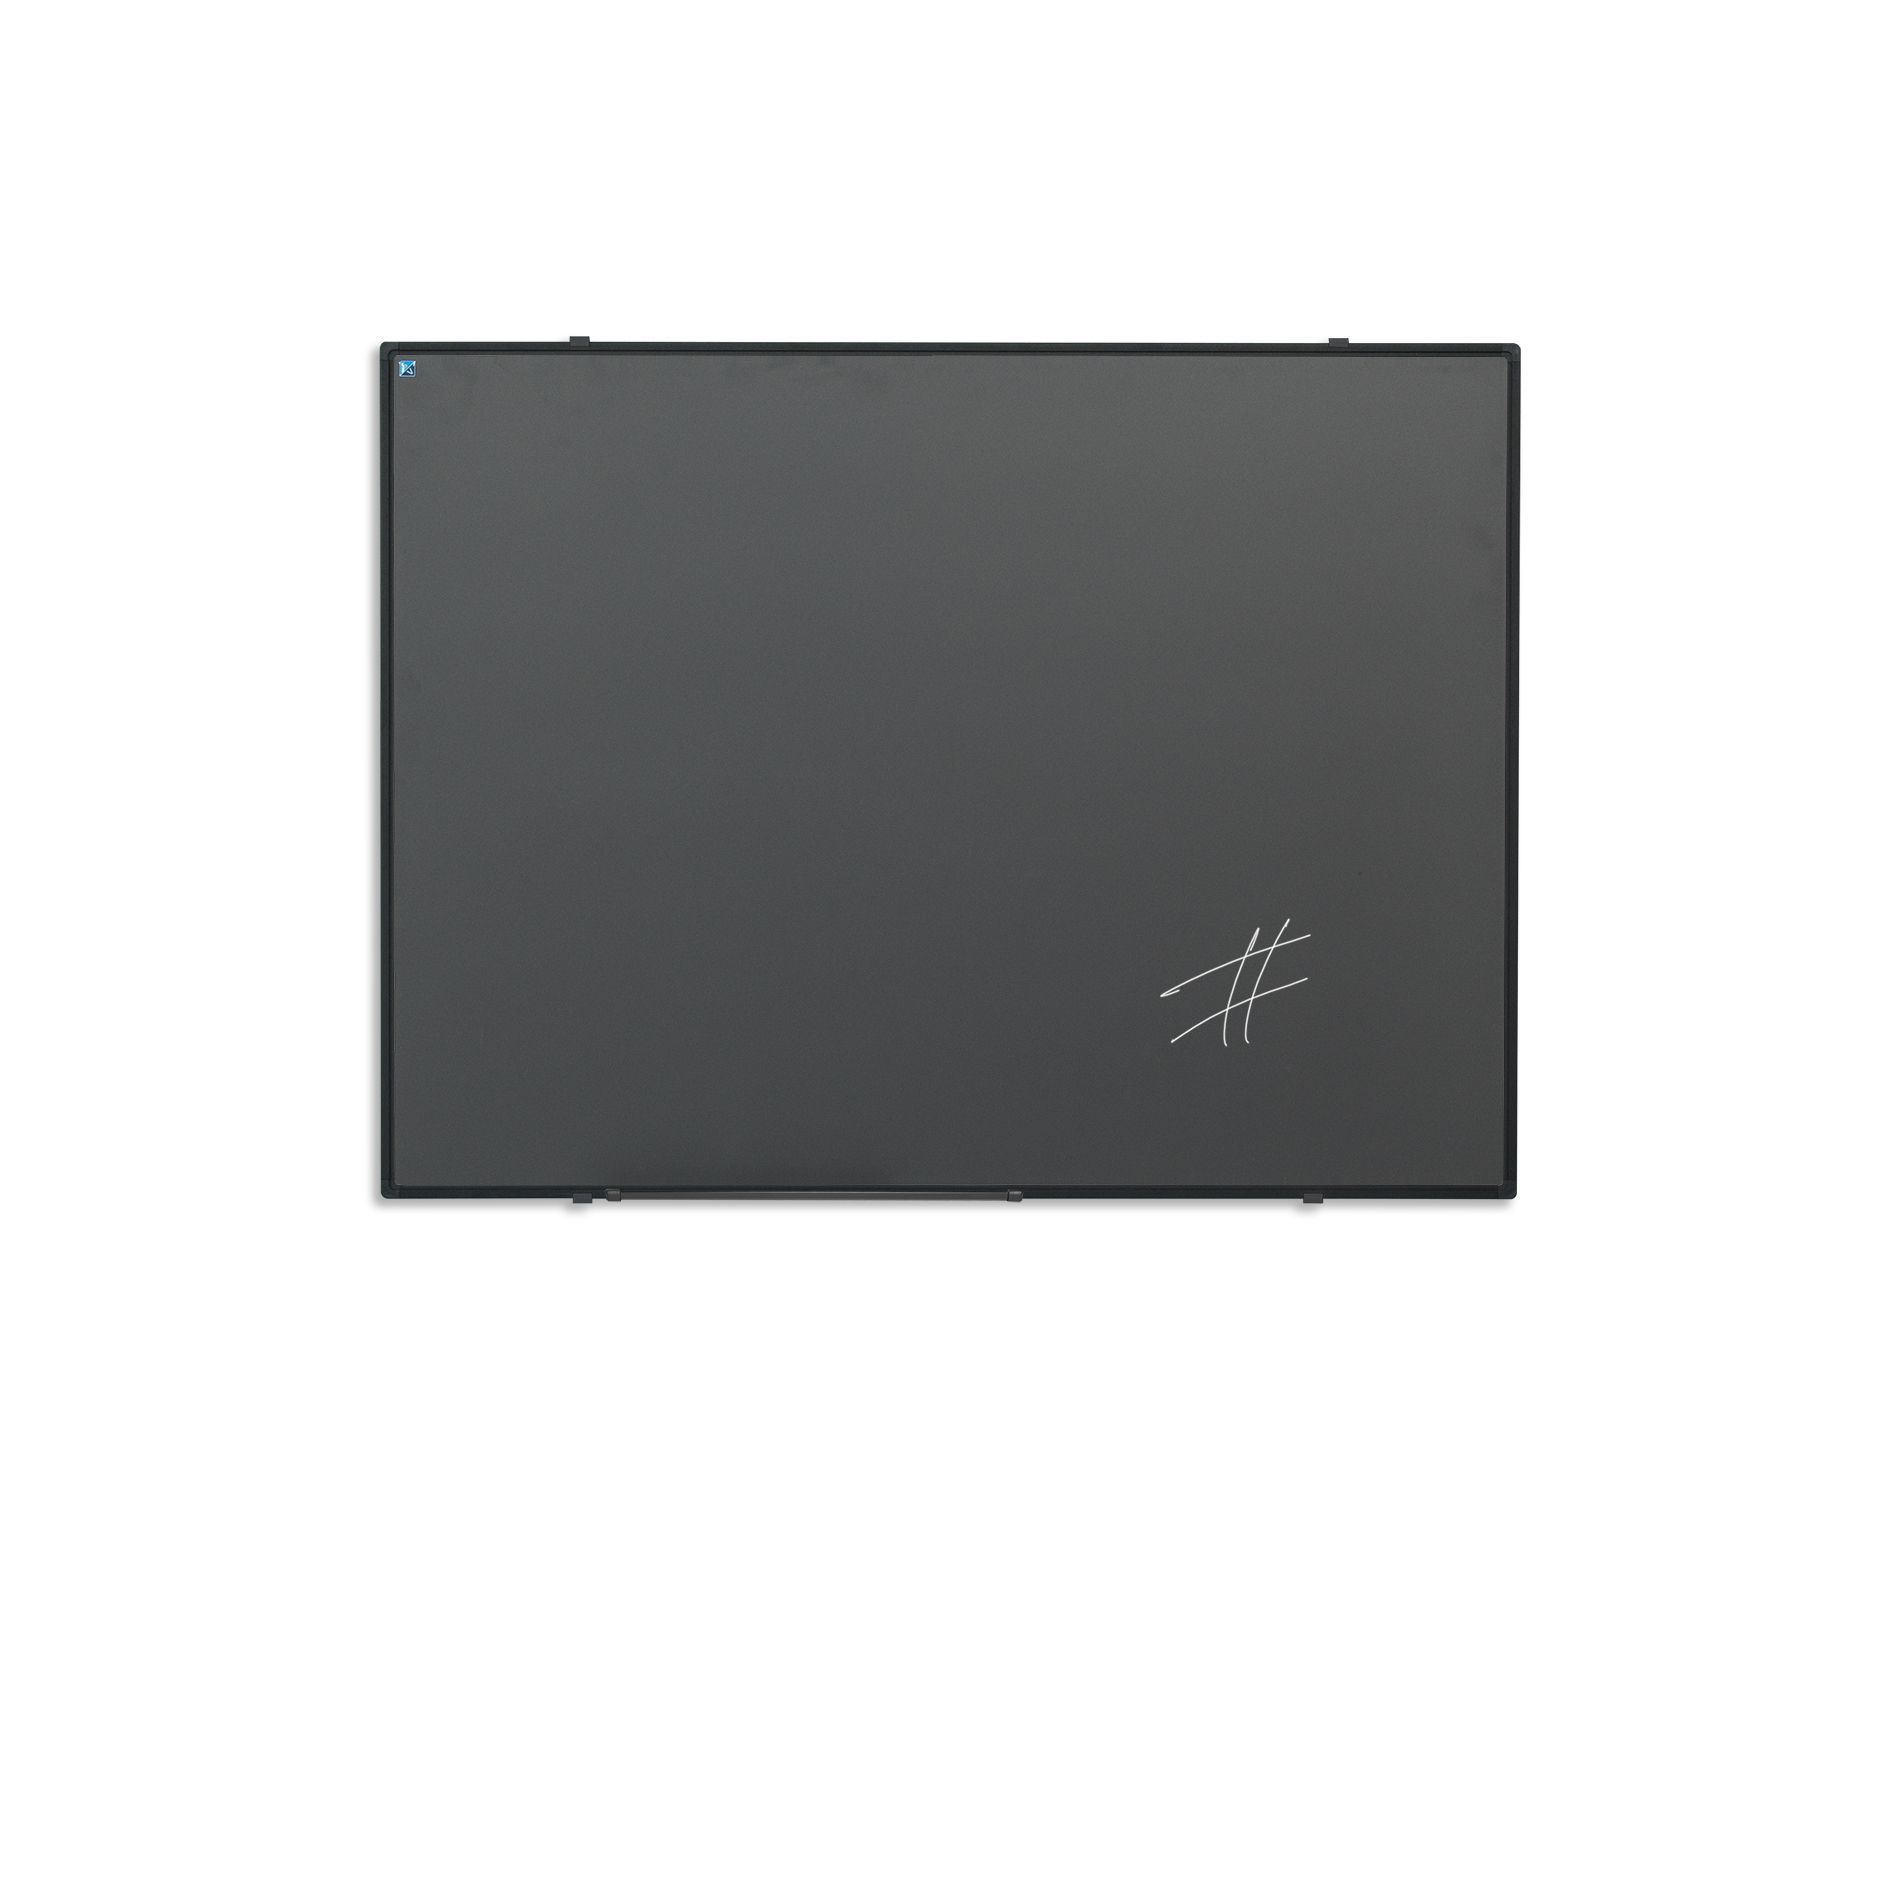 Krijtbord zwart Softline profiel 8mm, emailstaal grijs - 100x200 cm